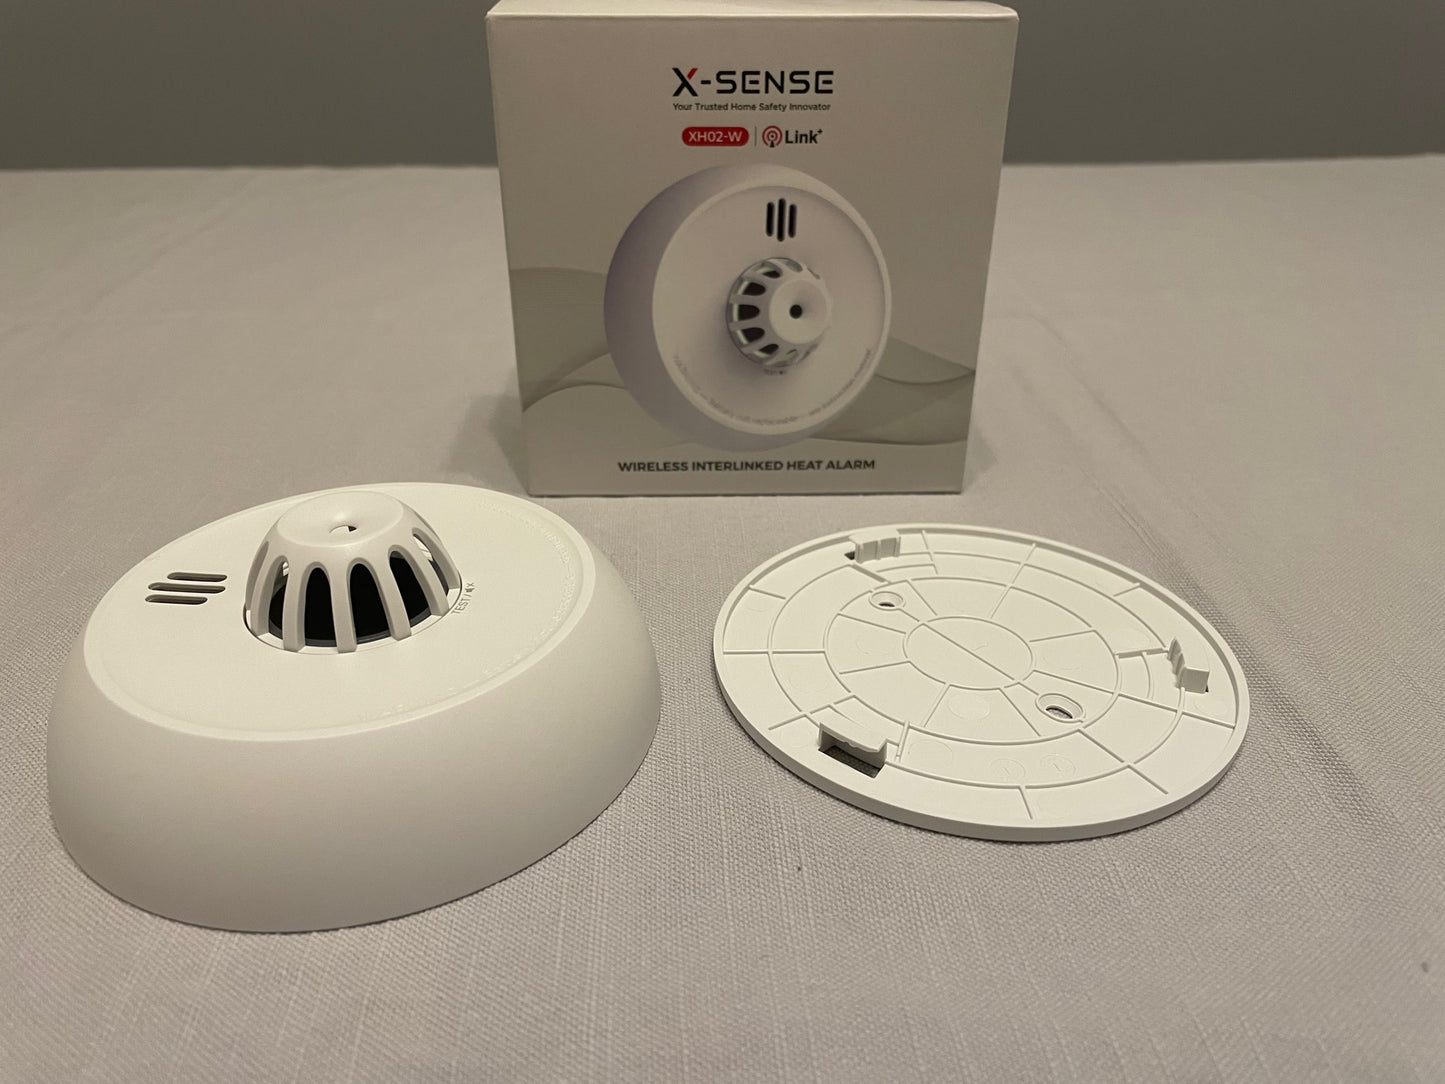 x sense xh02 w wireless interlinked heat alarm